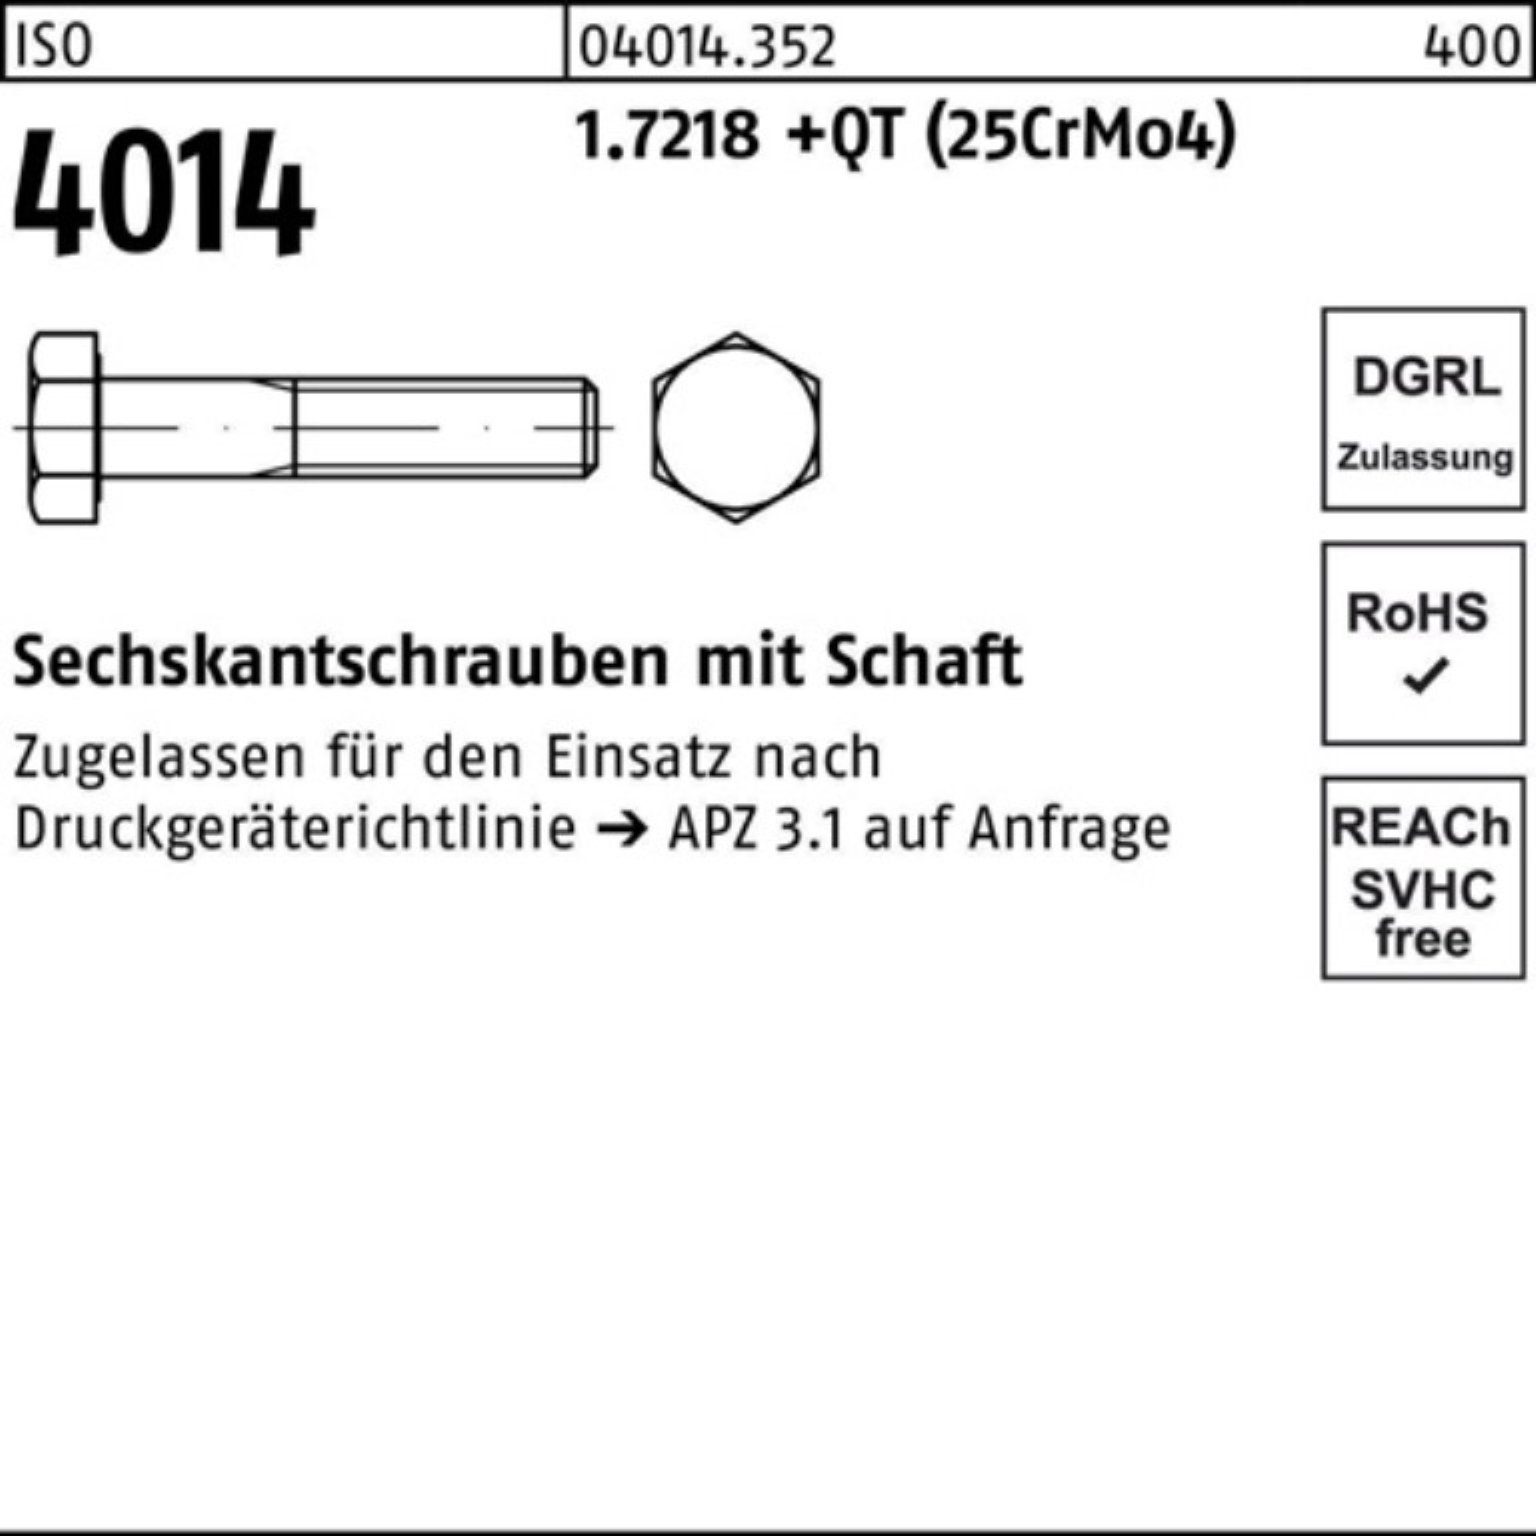 +QT Sechskantschraube 4014 ISO 100er M24x (25Cr Sechskantschraube 1.7218 Bufab Schaft 240 Pack